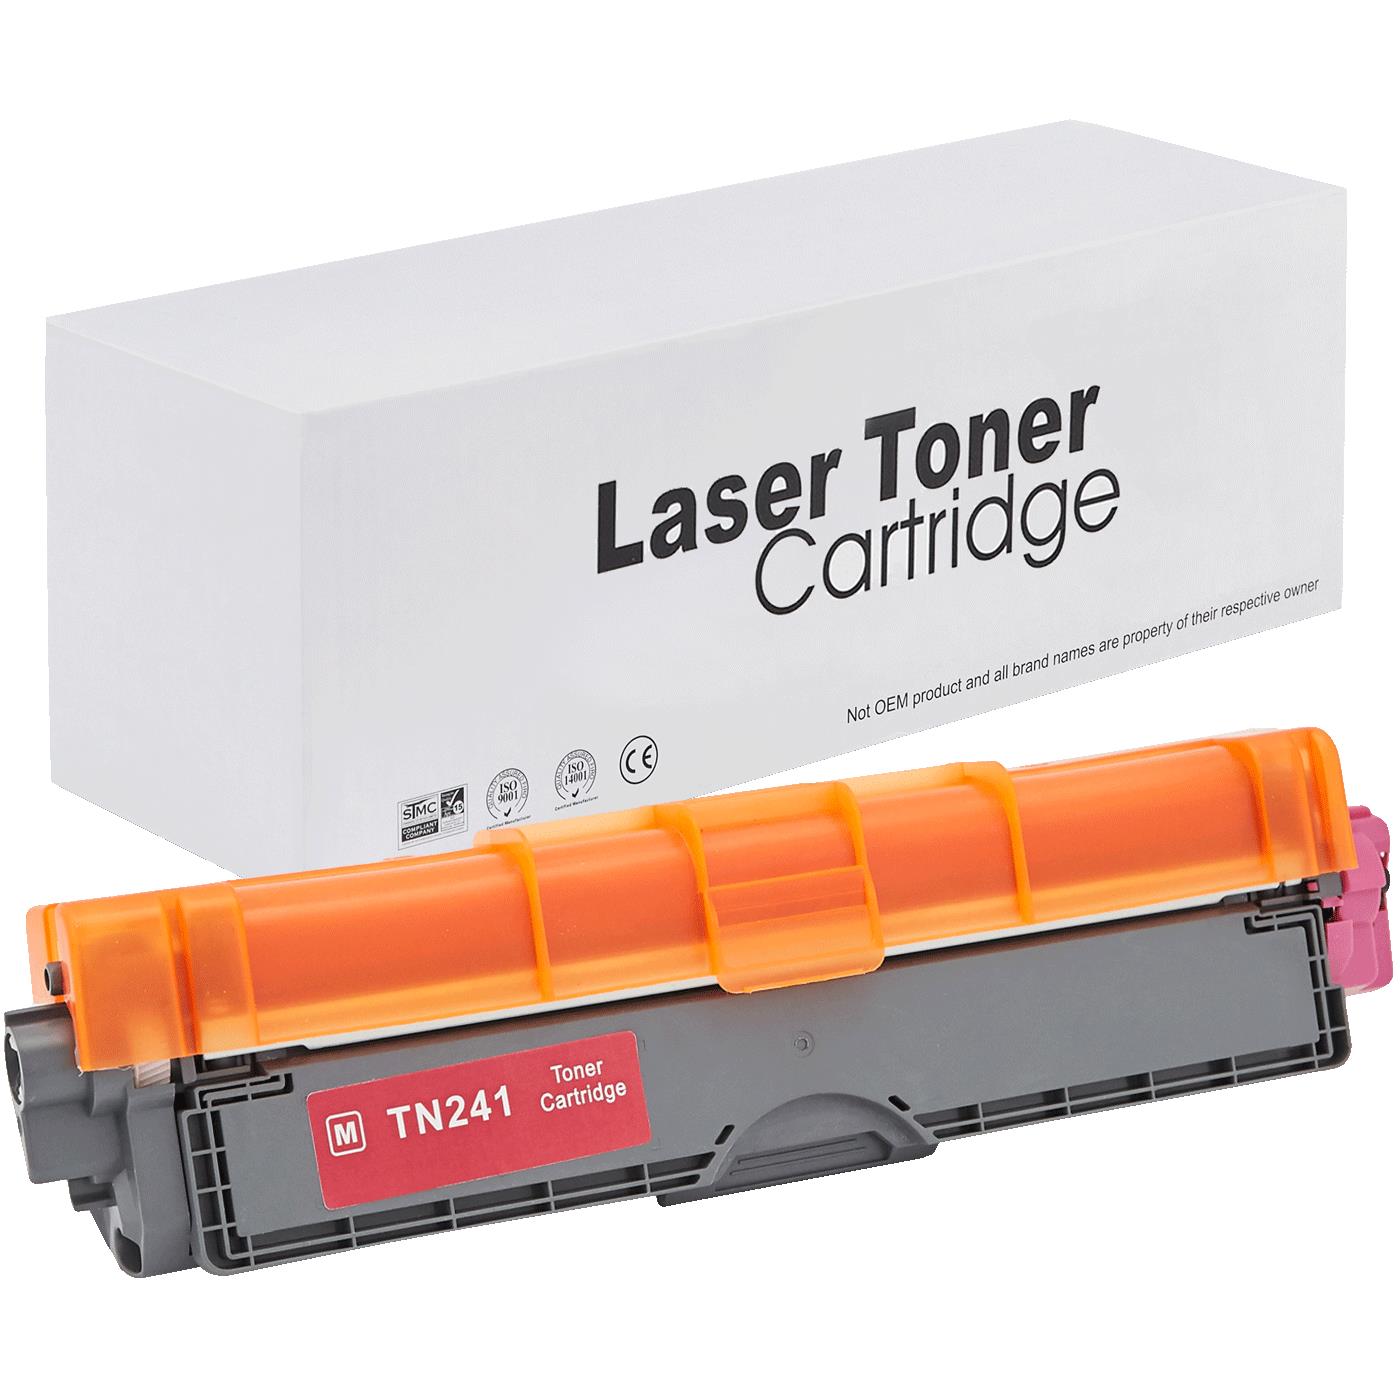 съвместима тонер касета за принтери и печатащи устройства на Brother HL-3150 CDW Toner BR-241M | TN241M. Ниски цени, прецизно изпълнение, високо качество.